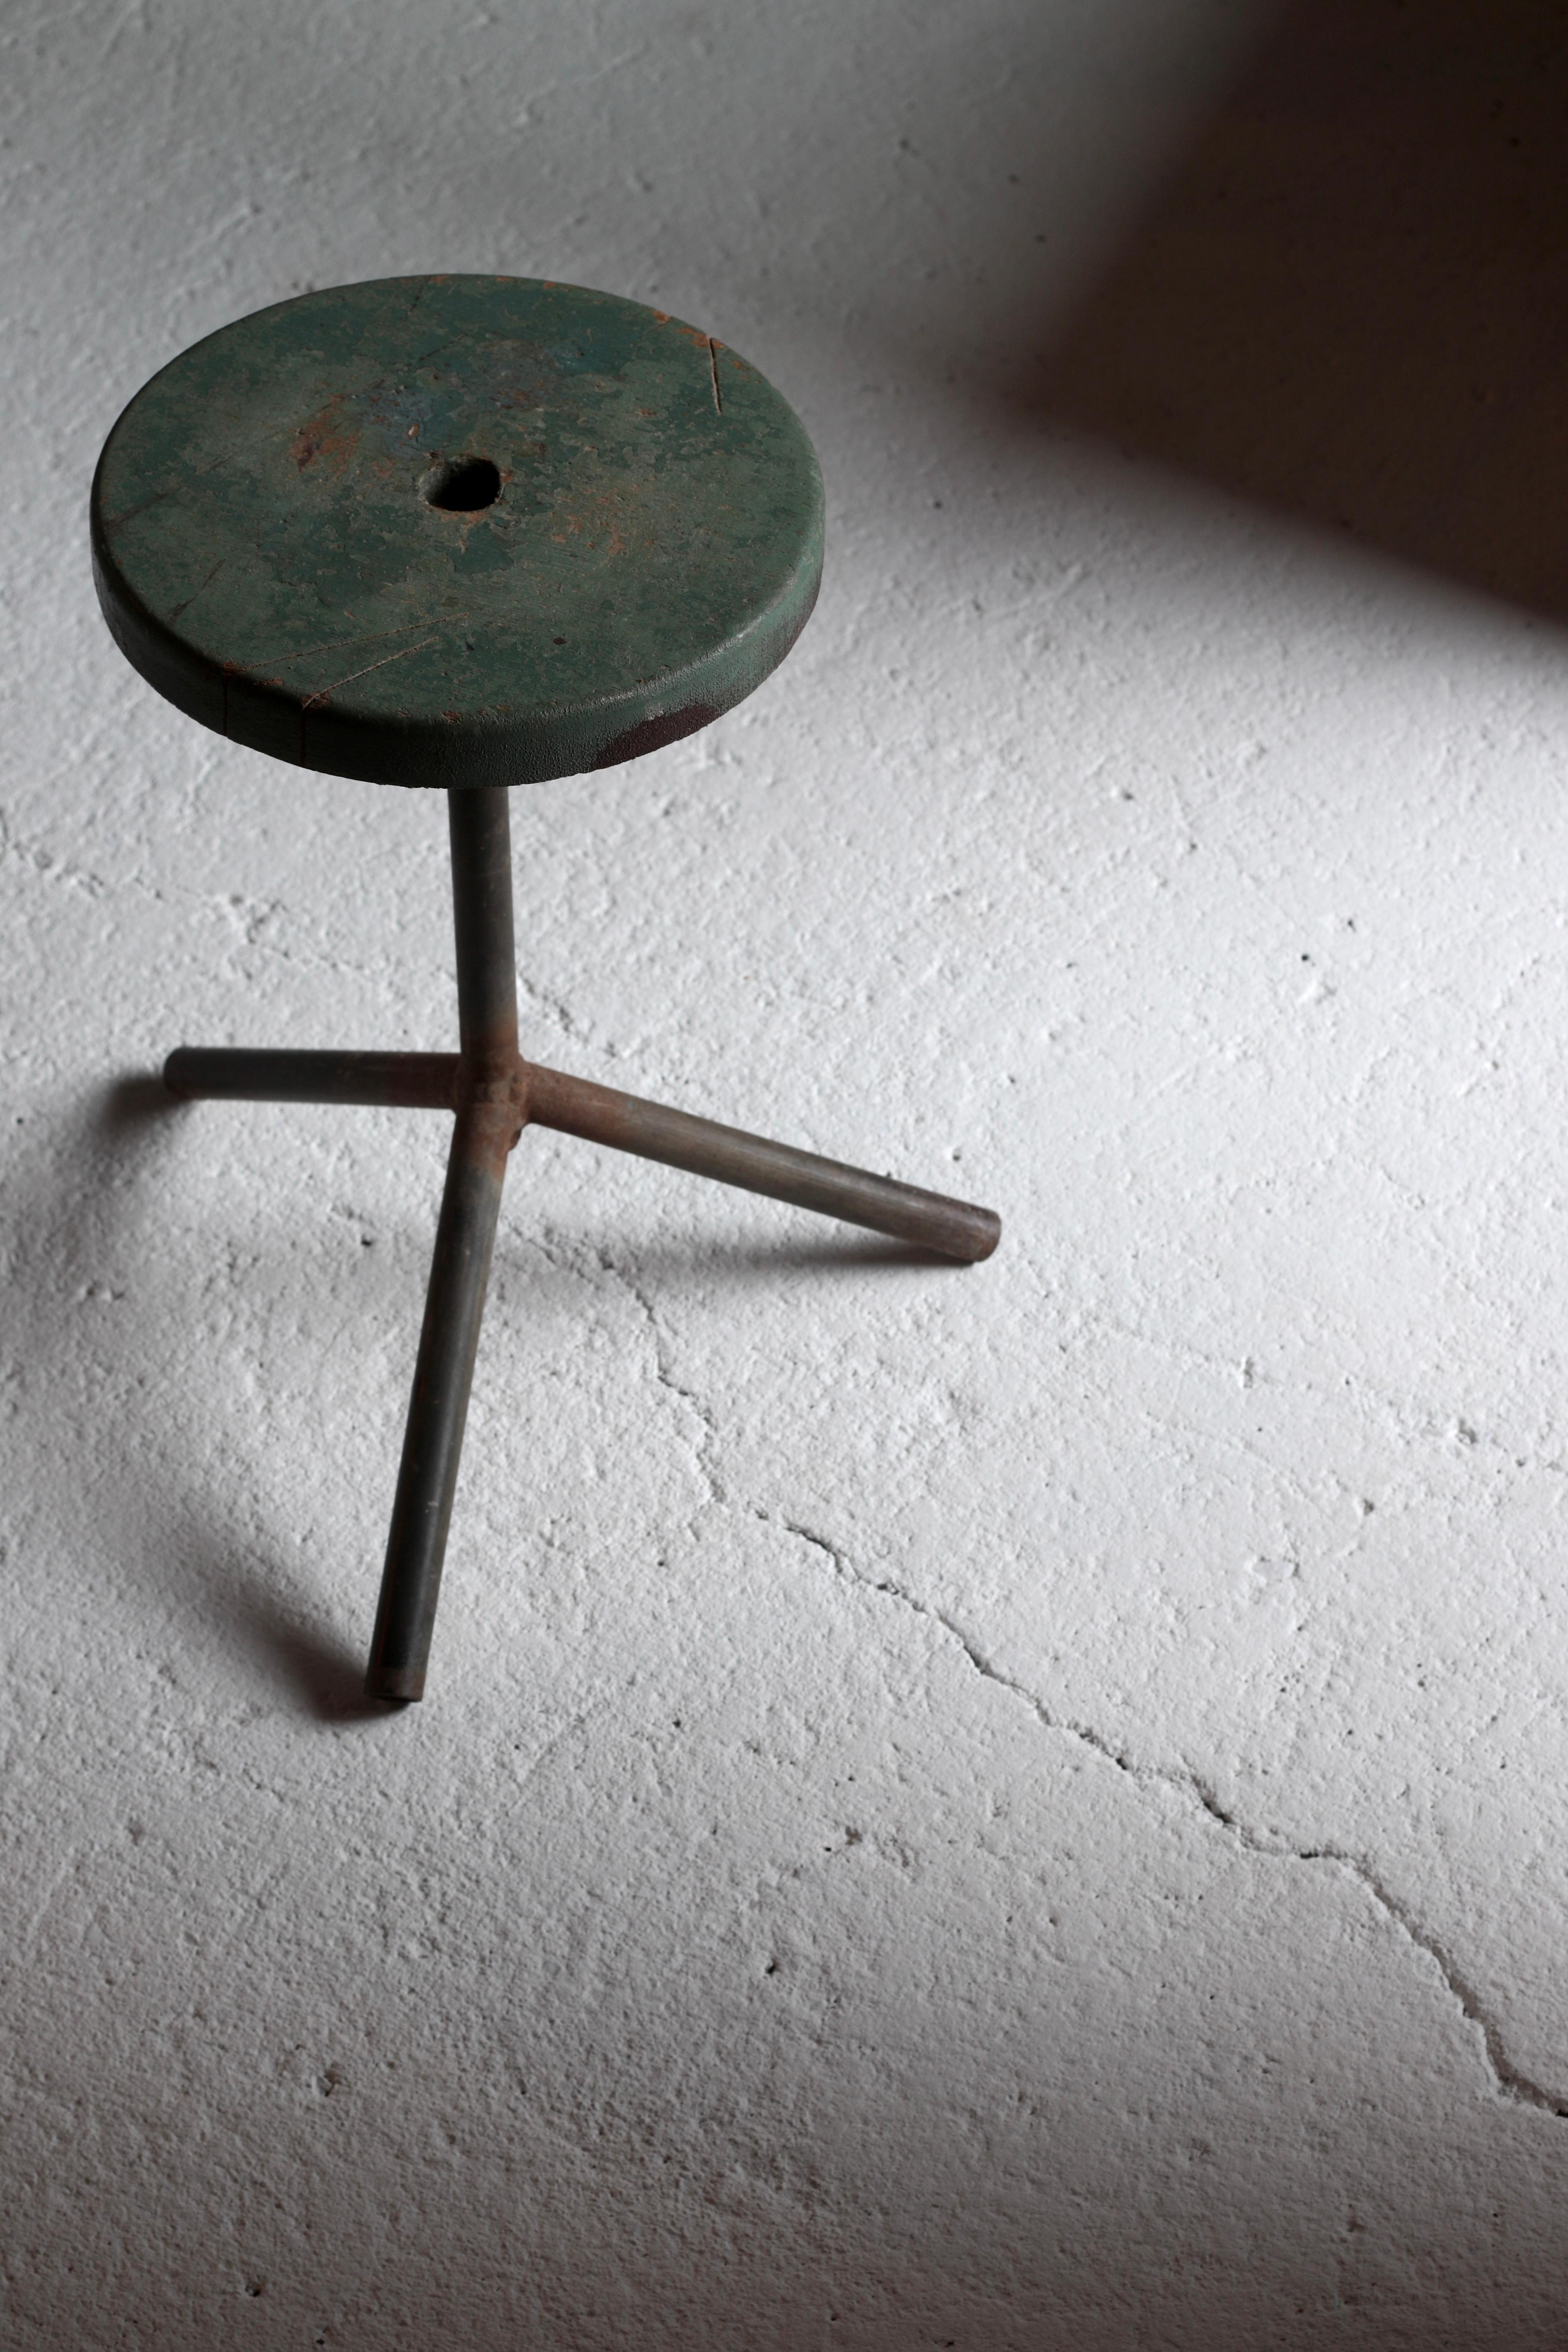 Es ist ein alter japanischer Drehstuhl.

Es scheint, dass er beim Bonsaibasteln durch Drehen auf dieser Sitzfläche benutzt wurde.

Die Beine bestehen aus Eisen und sind aus einem einfachen Material.

Die Sitzfläche scheint bemalt zu sein, aber durch